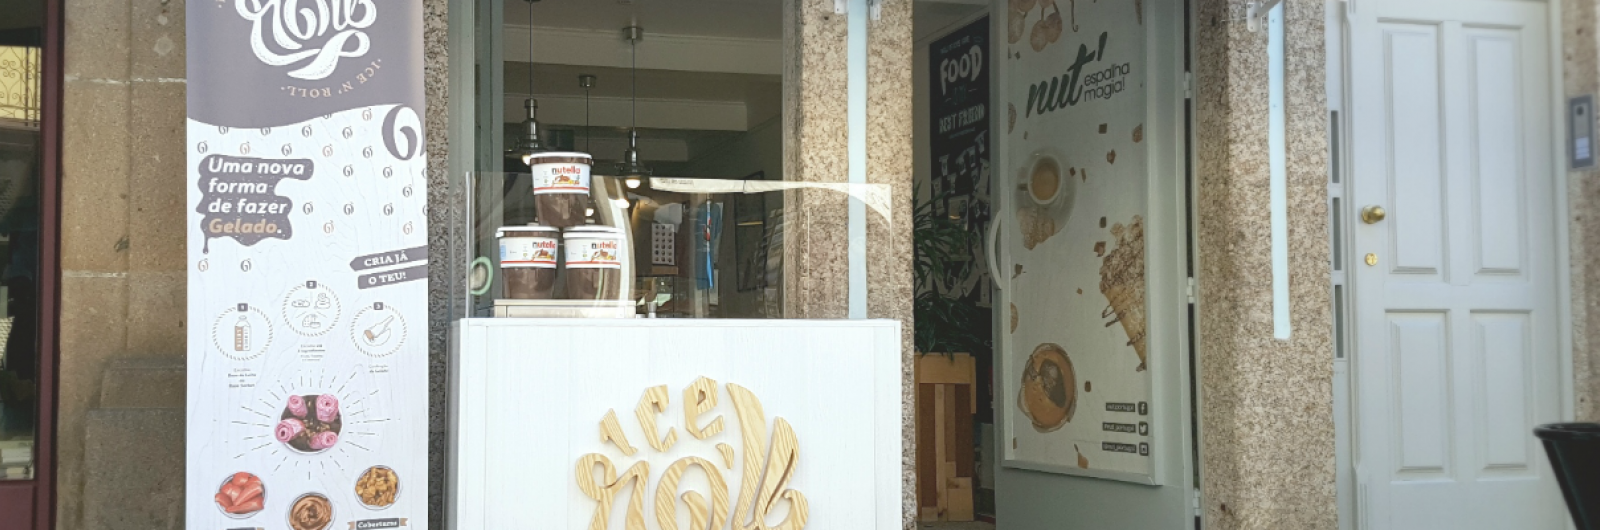 Lojas Nut' de Aveiro e Braga são as próximas paragens do conceito Ice N' Roll